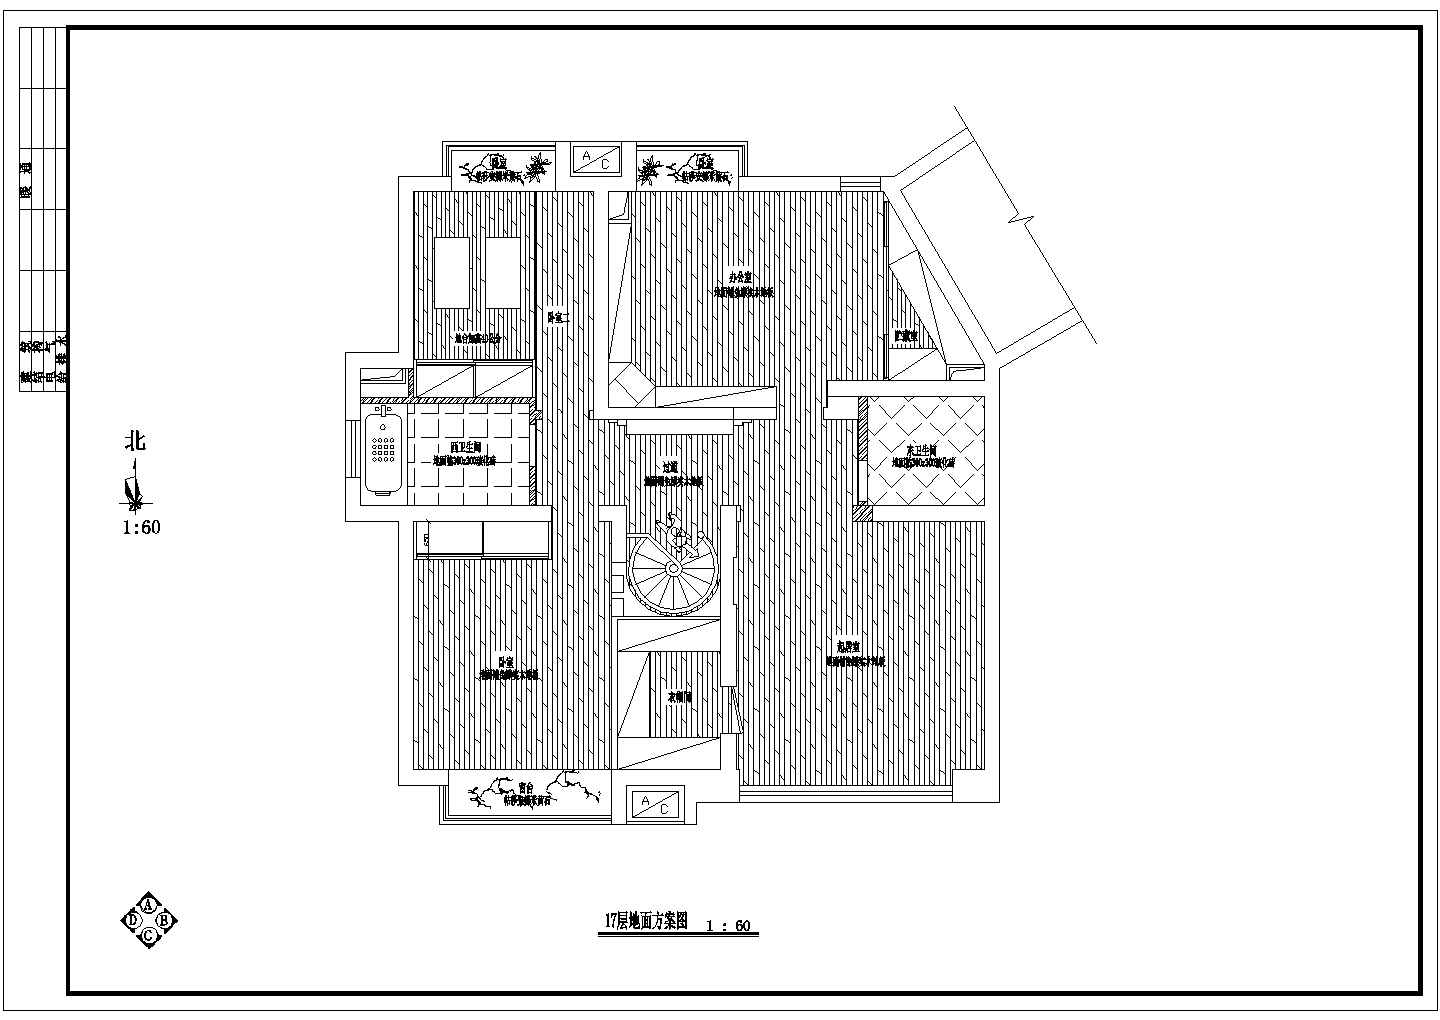 【常州】某高档小区内跃层式套房室内装修设计图